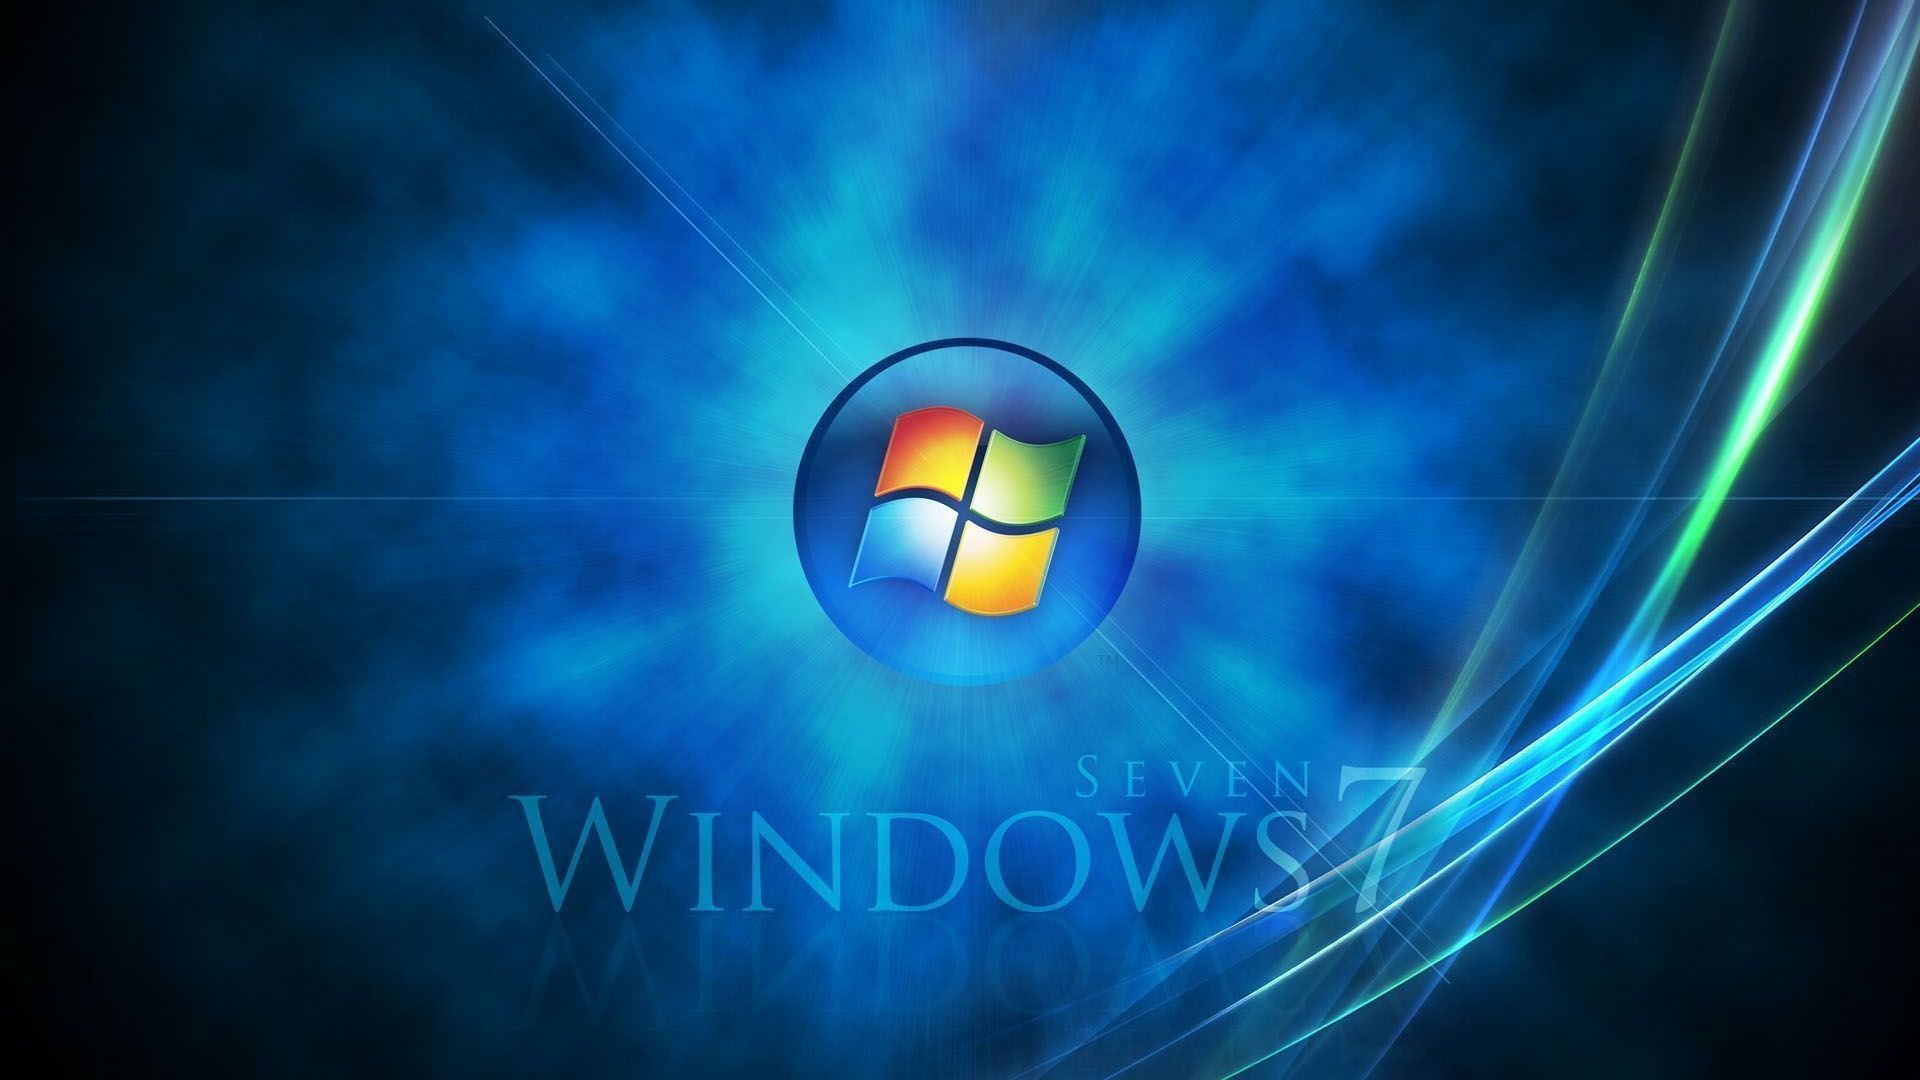 Windows 7 Hd Wallpaper 1920X1080